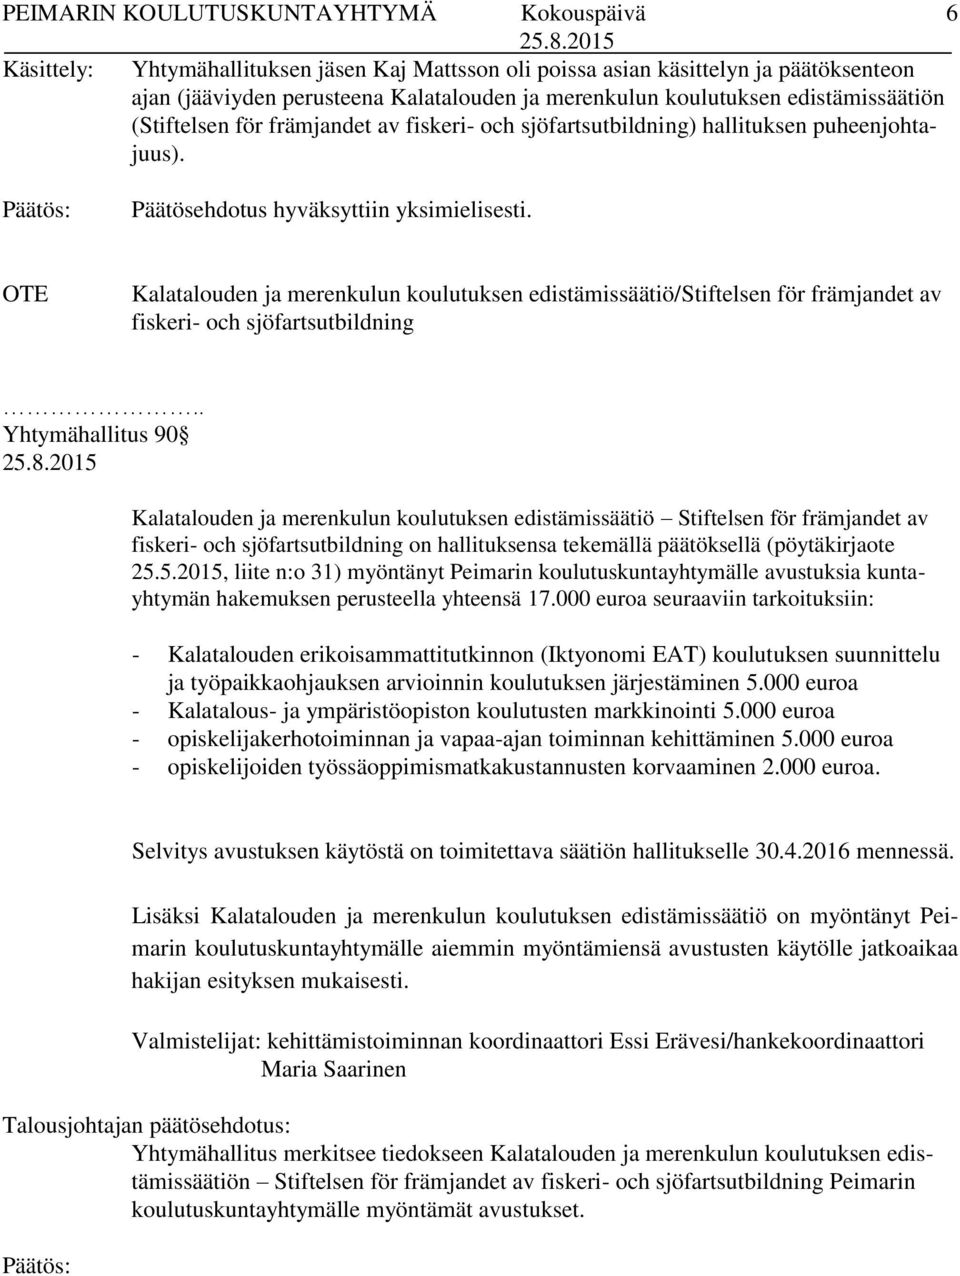 OTE Kalatalouden ja merenkulun koulutuksen edistämissäätiö/stiftelsen för främjandet av fiskeri- och sjöfartsutbildning.